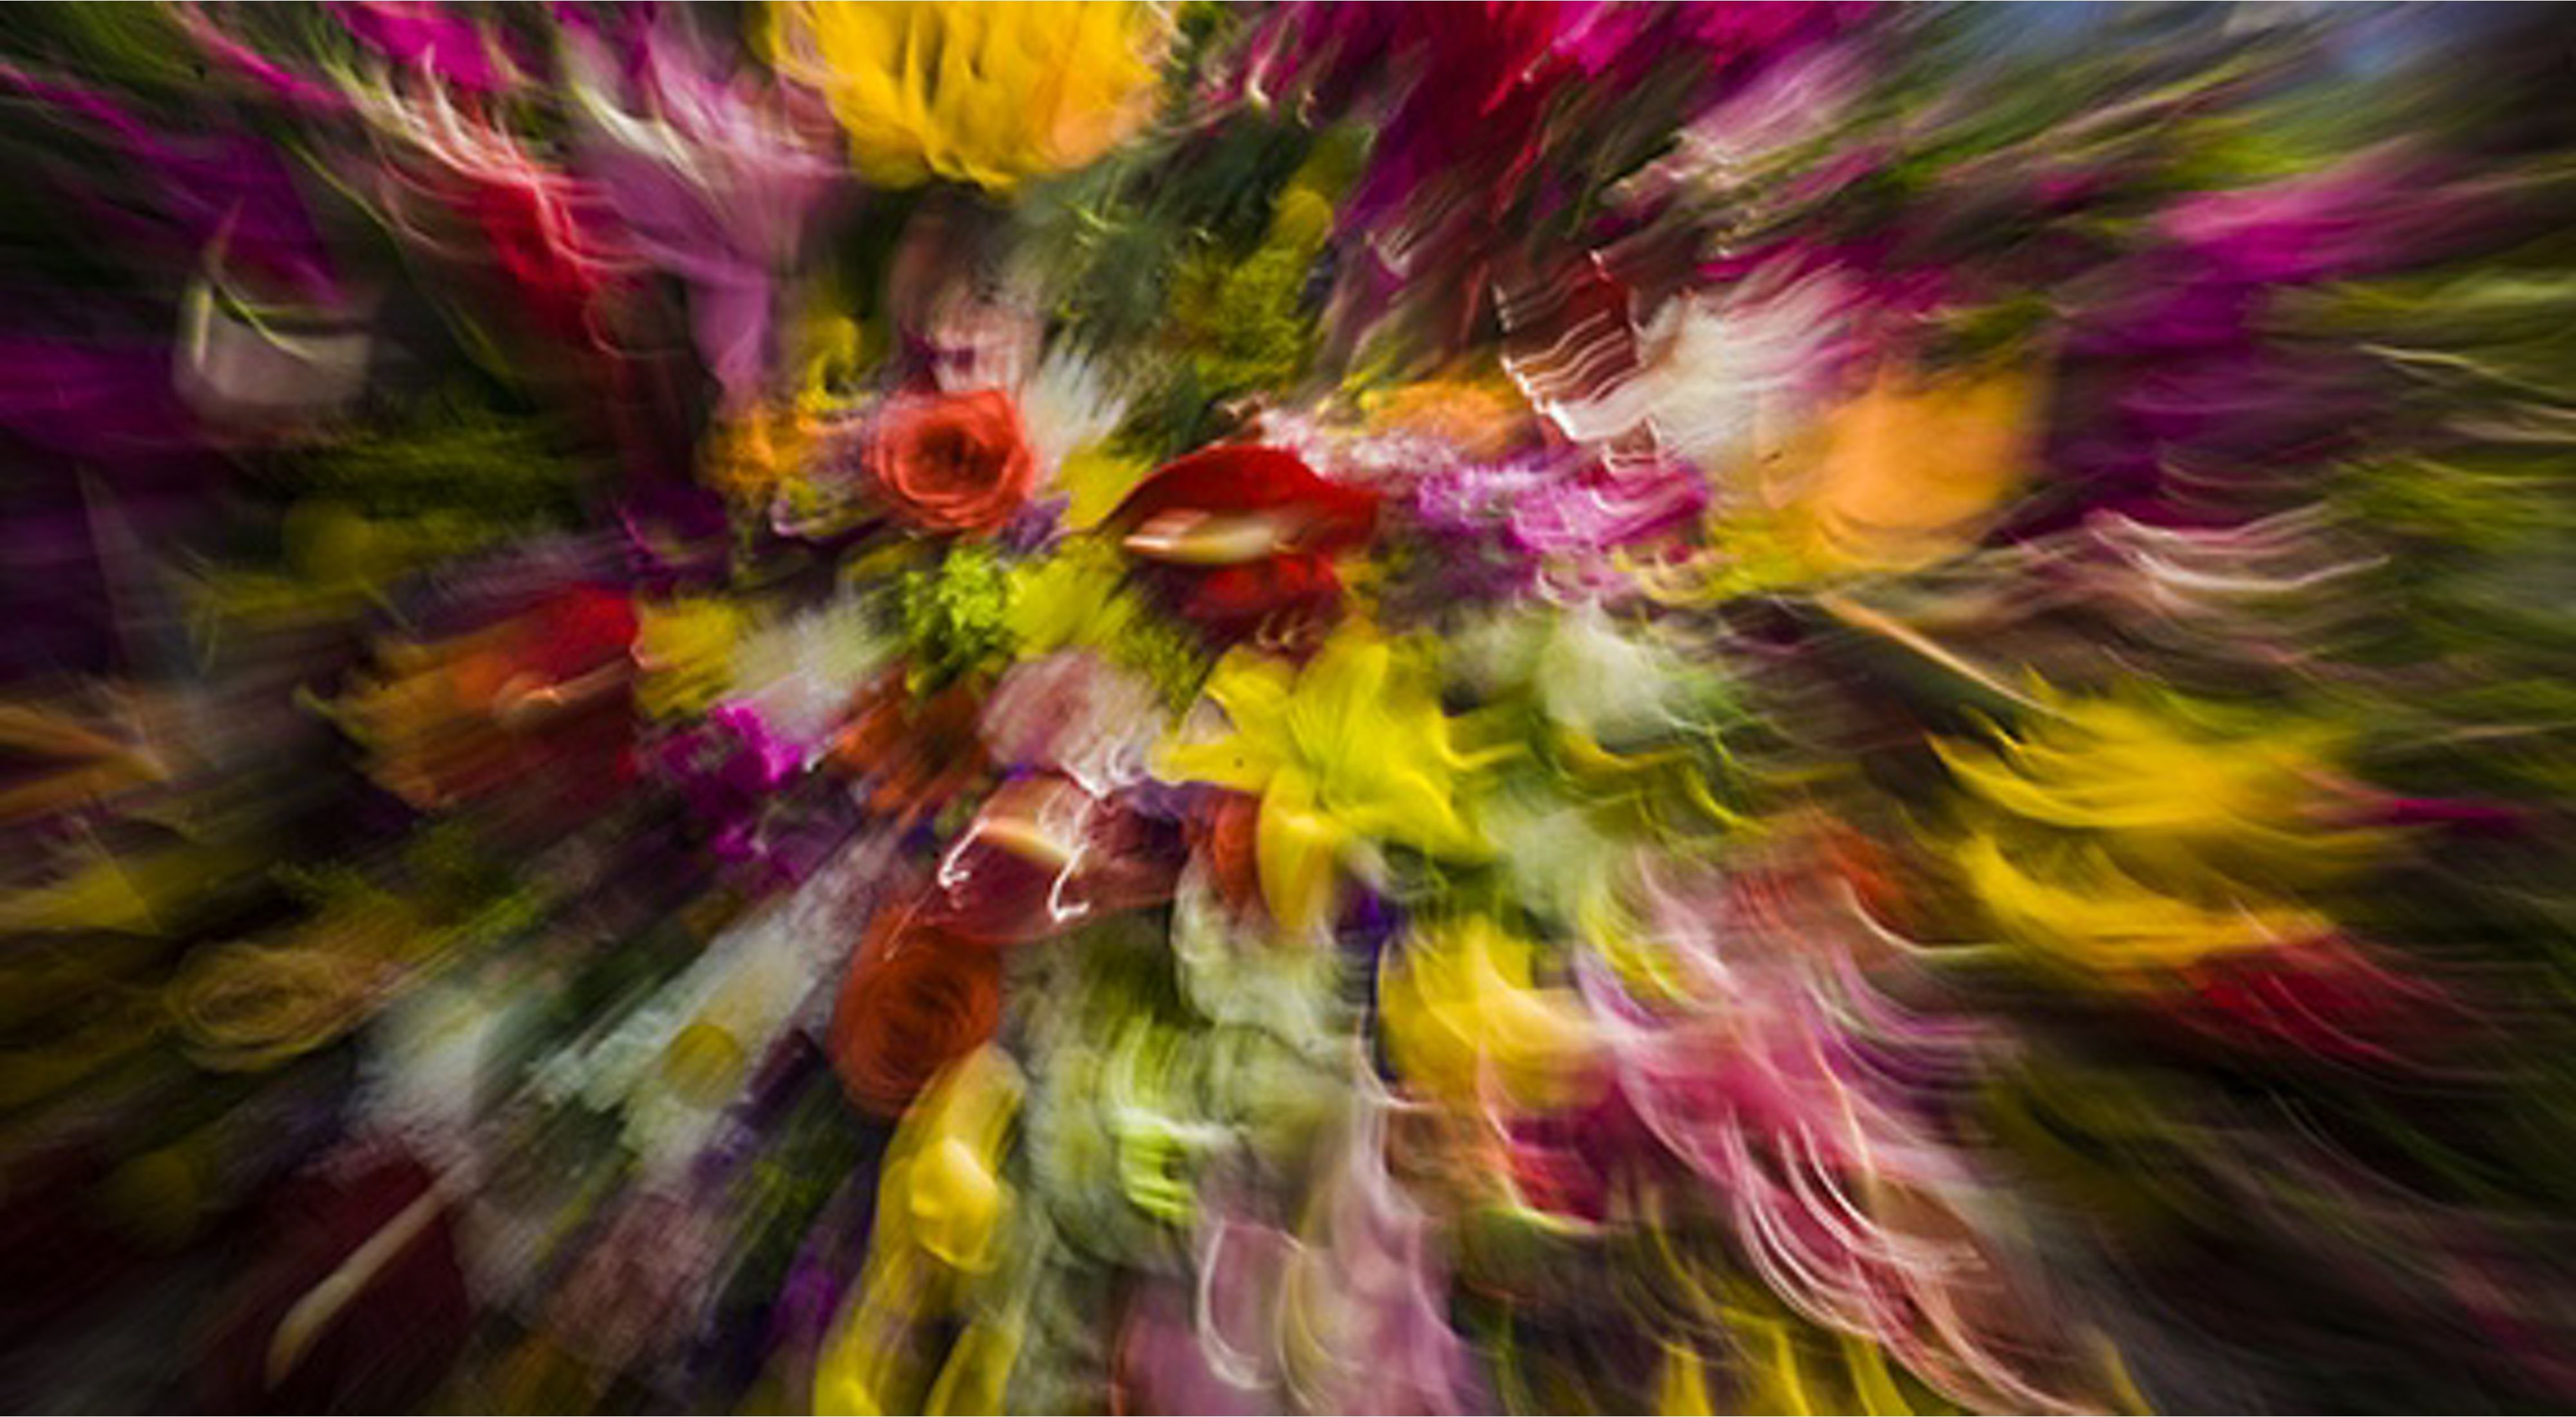 Captura difusa de flores coloridas.